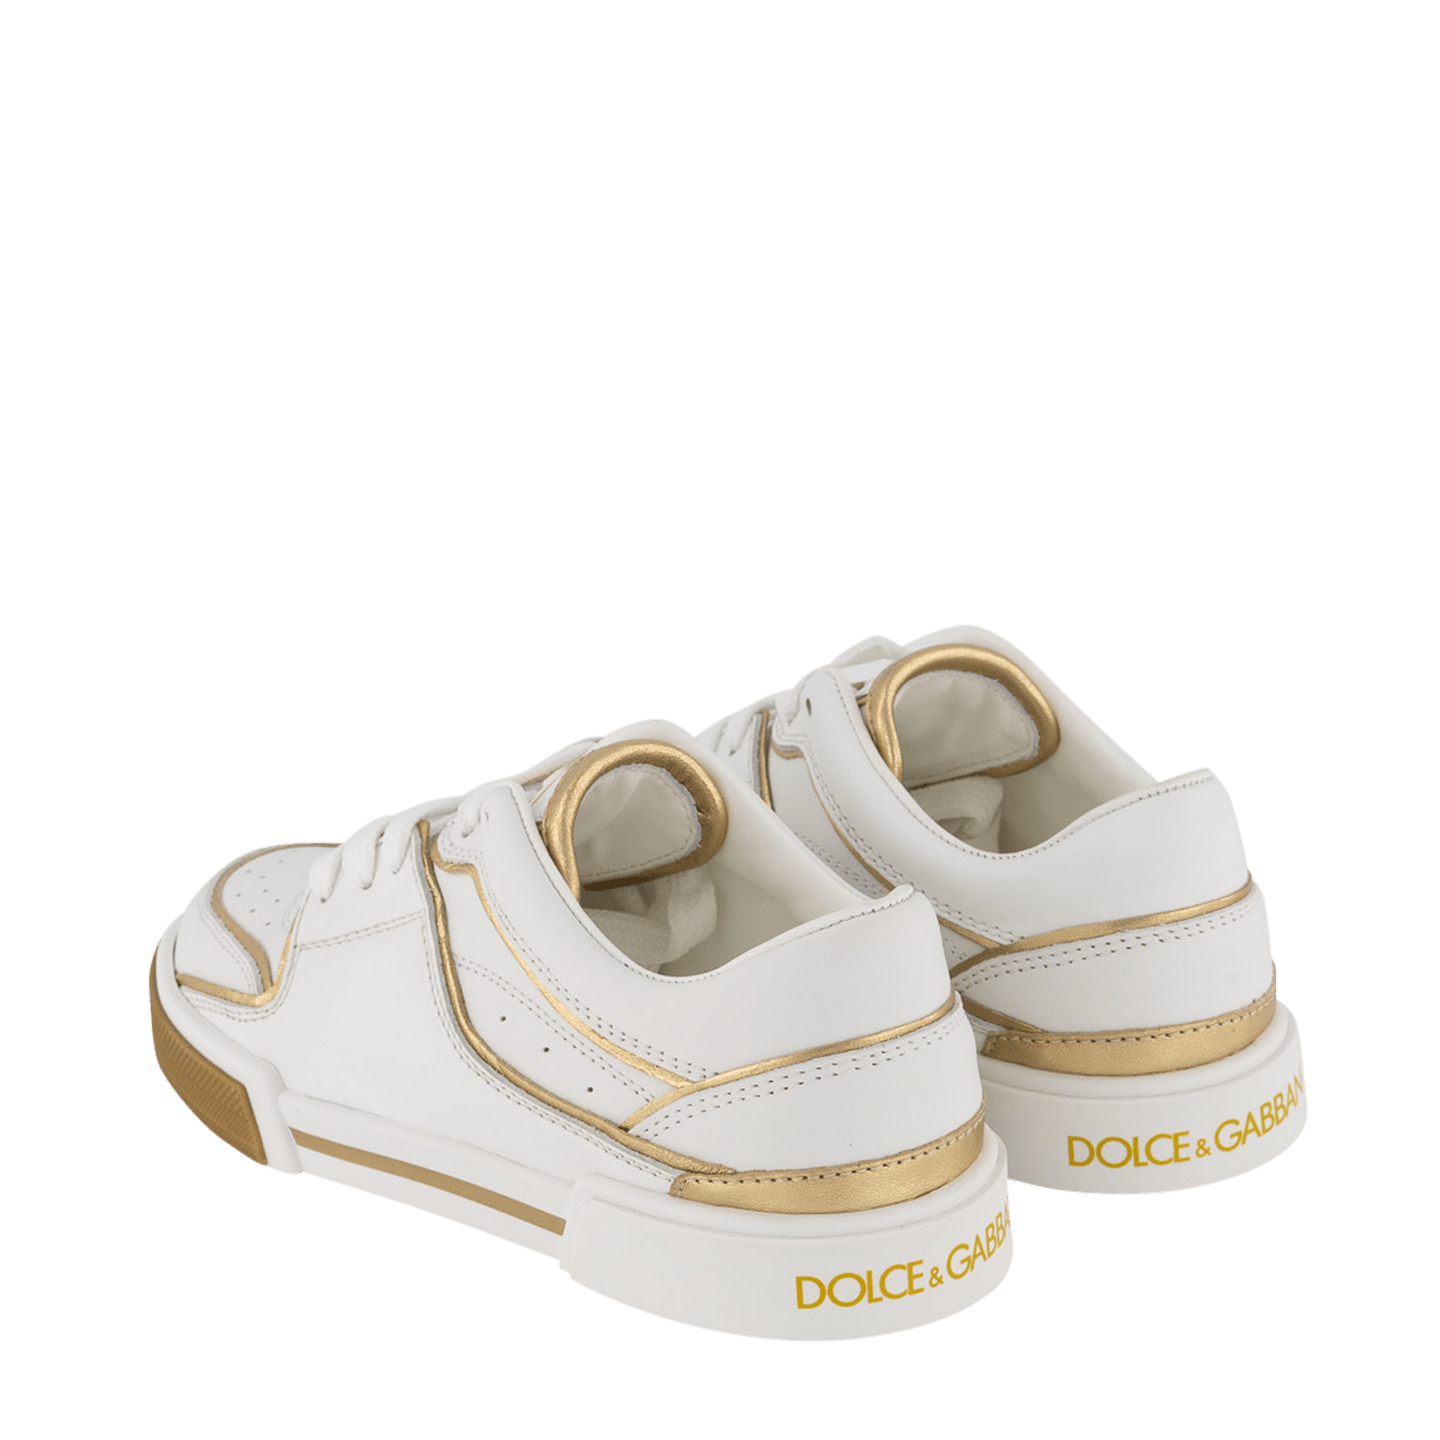 Dolce & Gabbana Kinder Meisjes Sneakers Goud 28